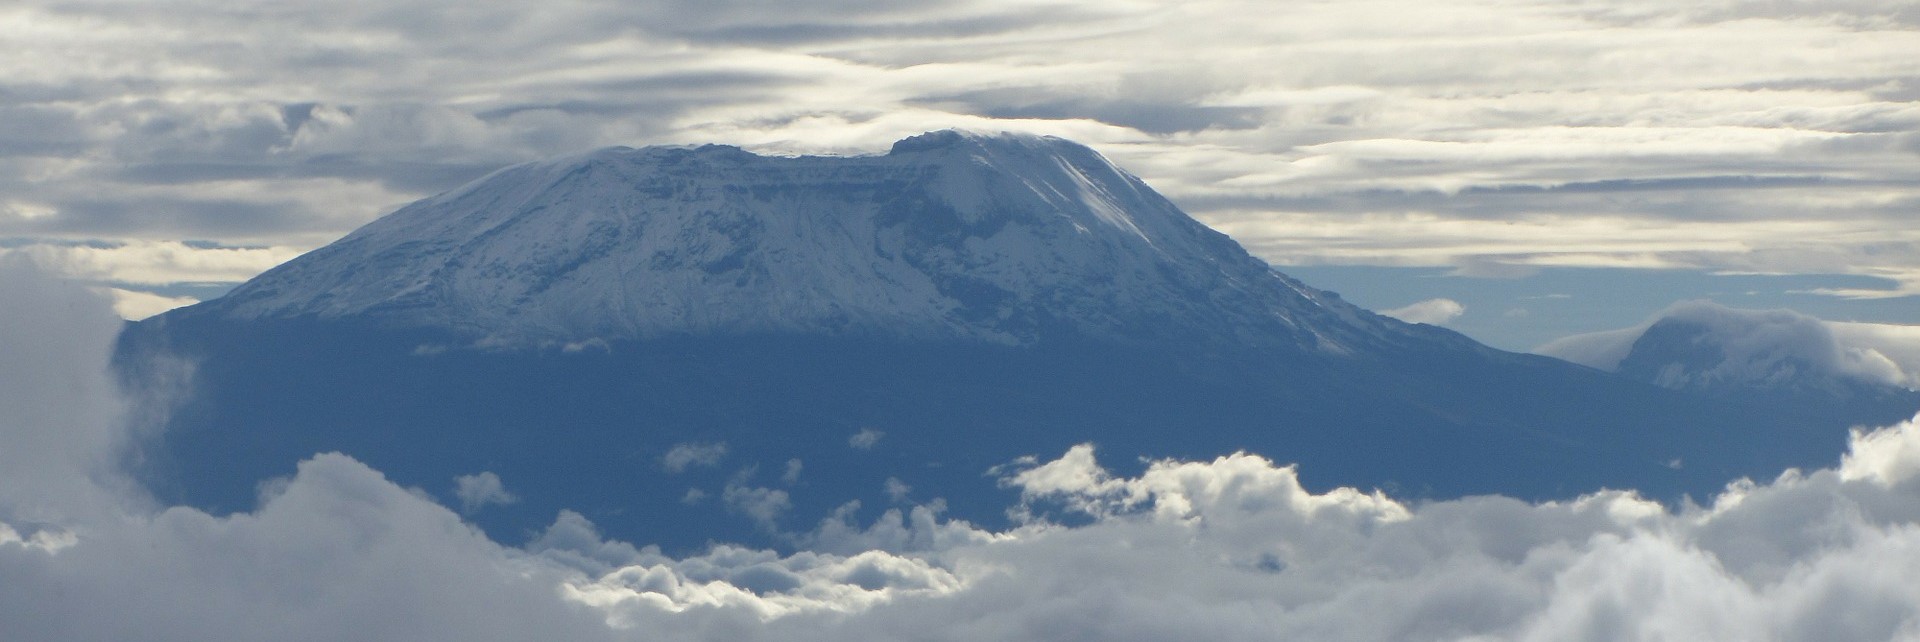 Kilimanjaro trekking tour